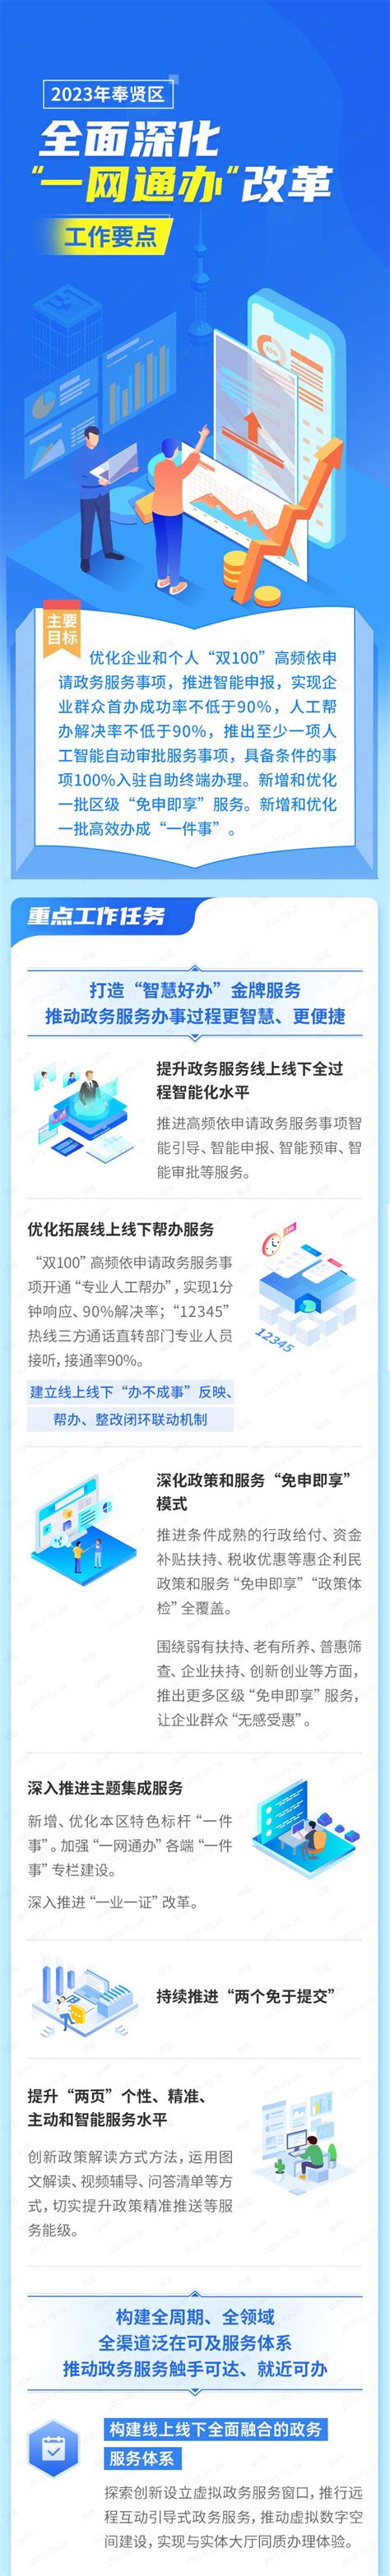 奉贤区财务管理一体化软件好使吗「上海翱唯软件供应」 - 8684网B2B资讯